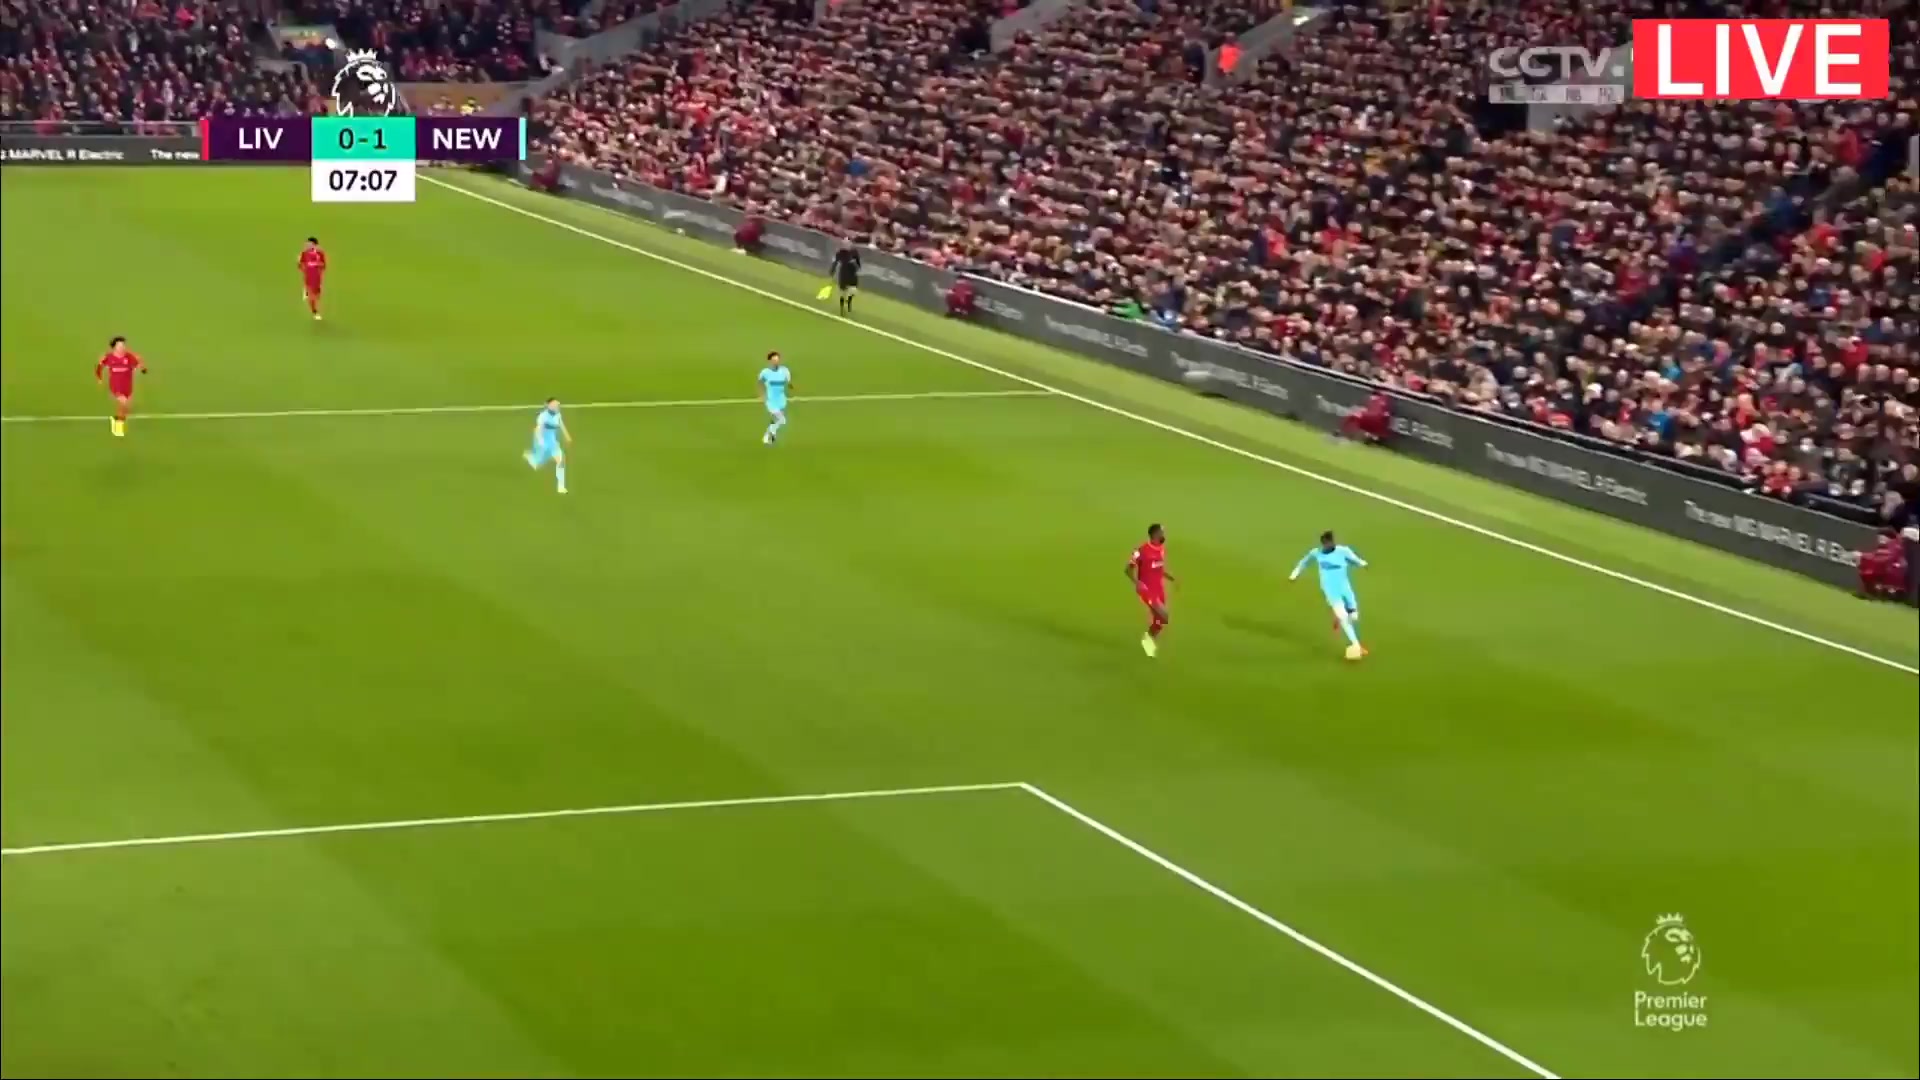 EPL Liverpool Vs Newcastle United Jonjo Shelvey Goal in 5 min, Score 0:1